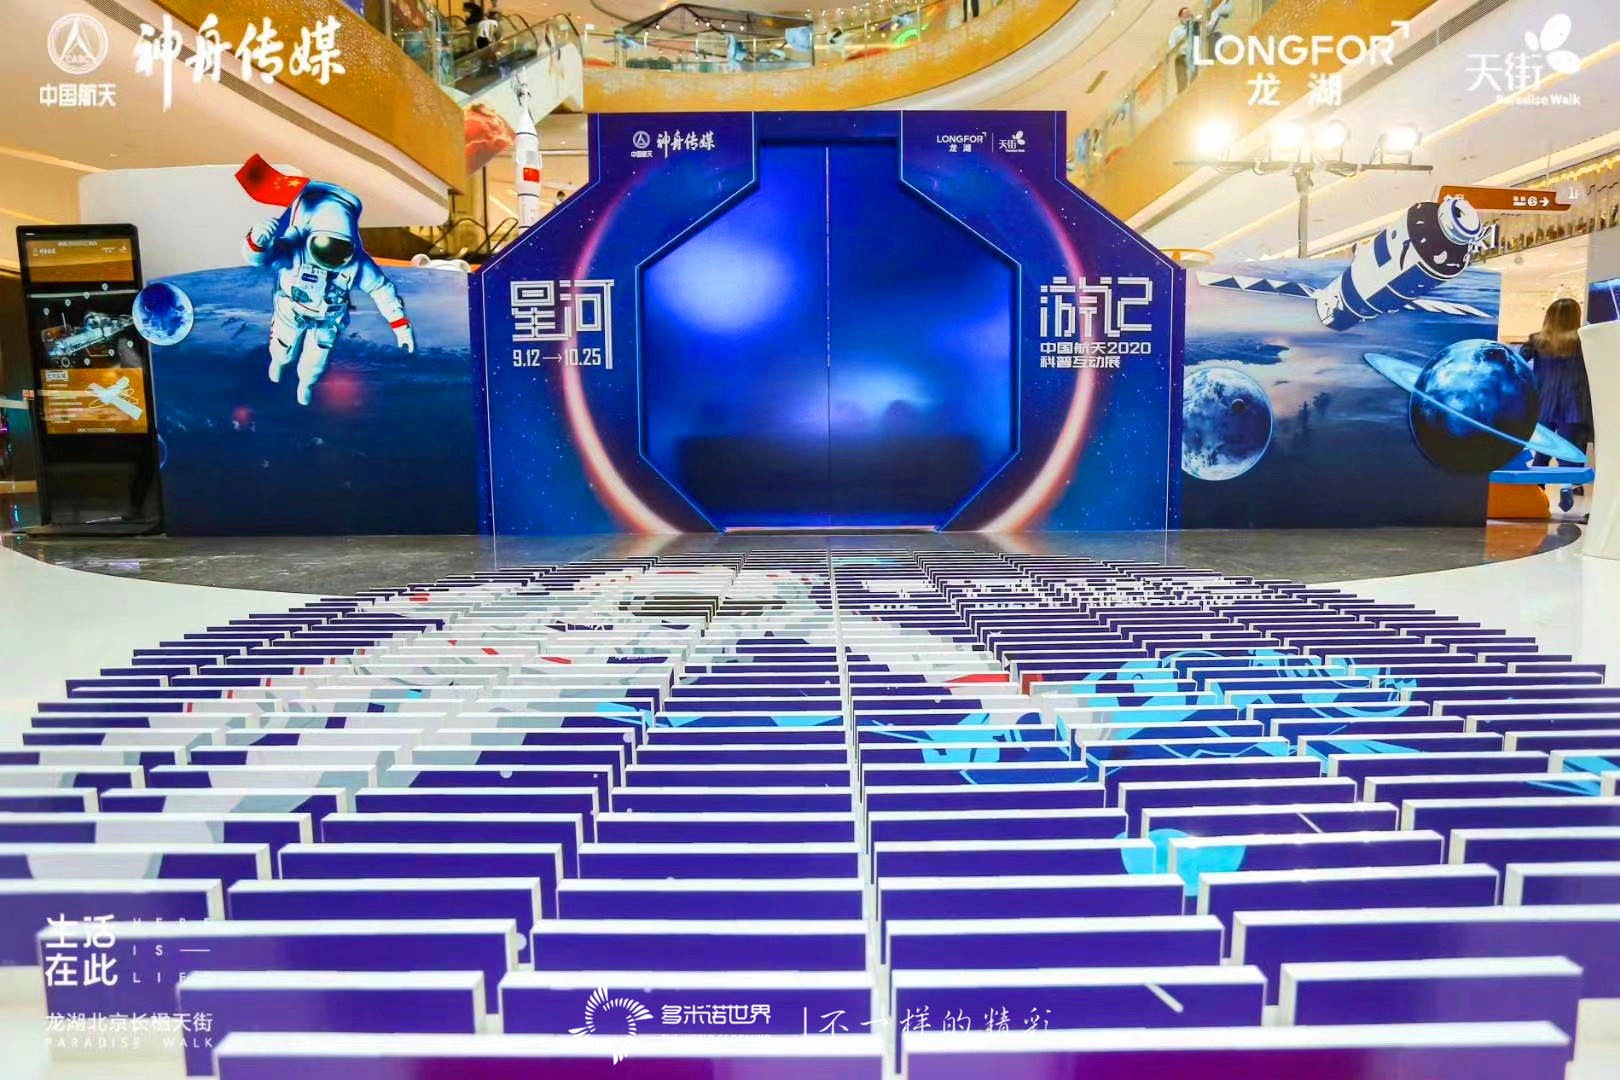 多米诺开启《星河游记 中国航天2020科普互动展》